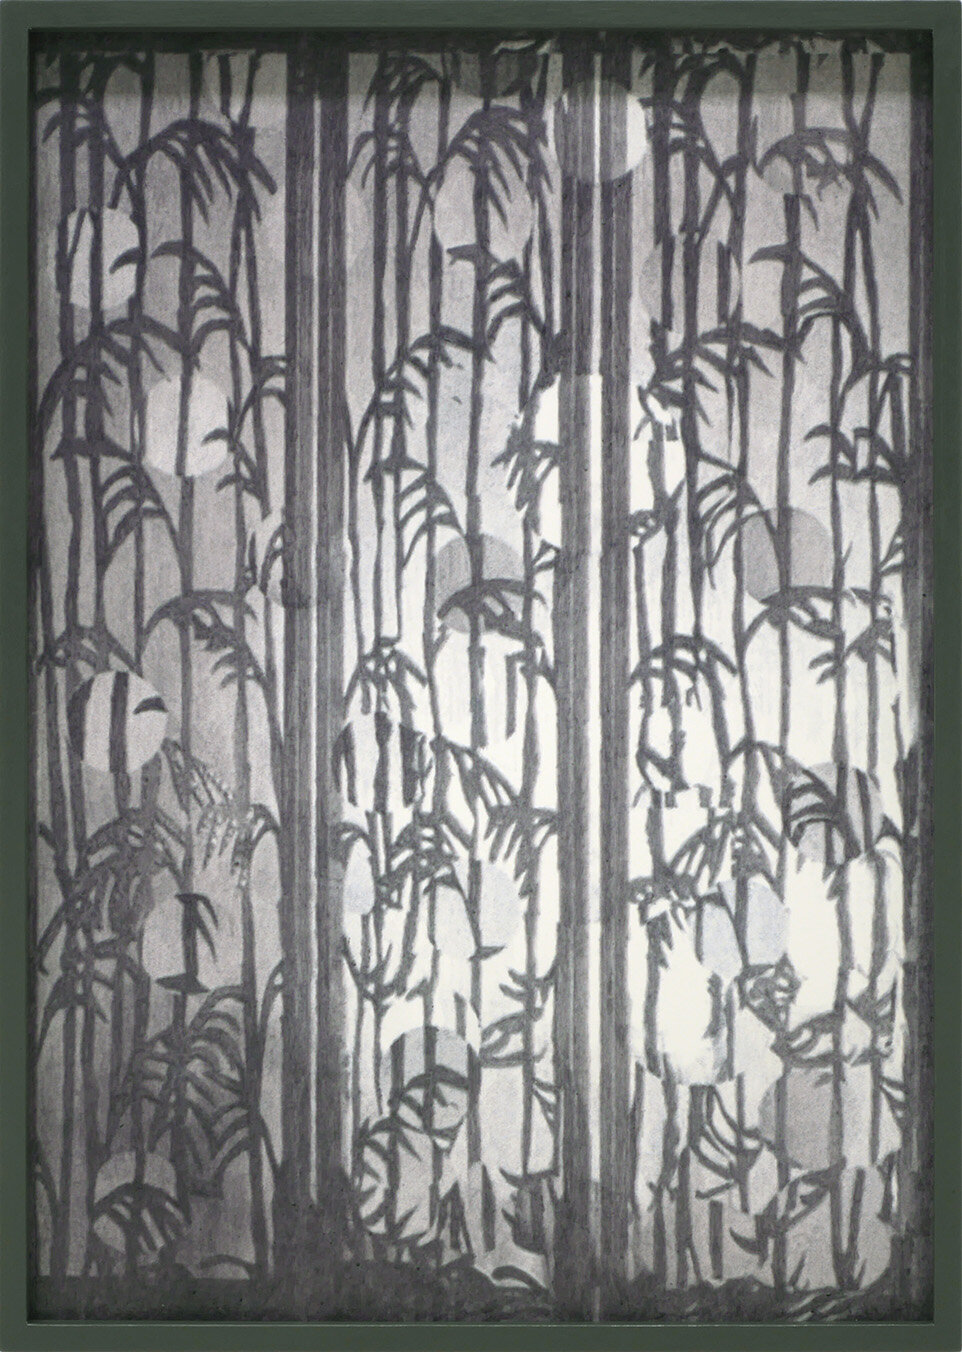  “Ohne Titel”, 2019, Aquarell und Kunstharze auf Passepartout; lackierter Bilderrahmen, Museumsglas, 45,2 x 32,2 cm 